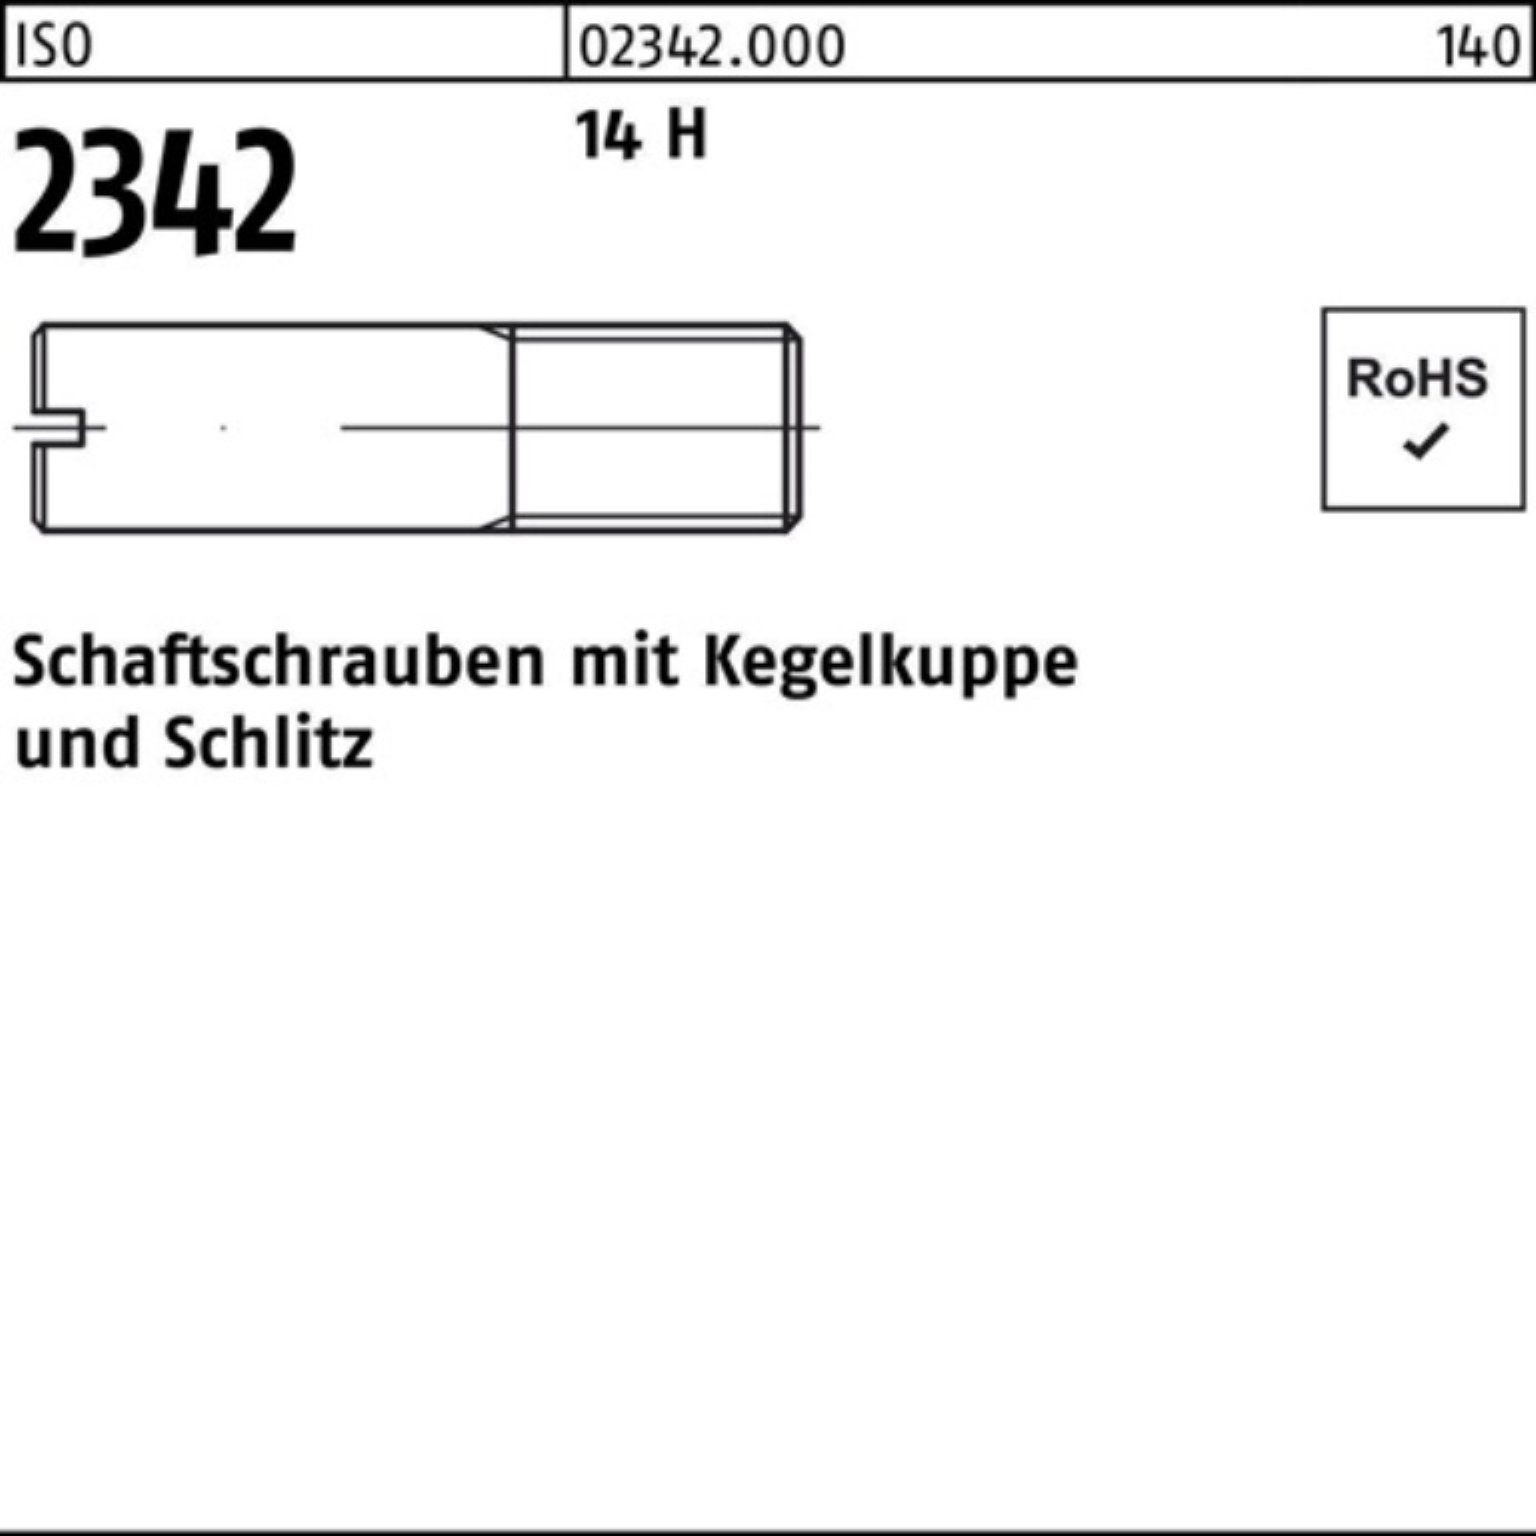 Reyher Schraube 100er Pack Schaftschraube ISO 2342 Kegelkuppe/Schlitz M8x 16 14 H 100